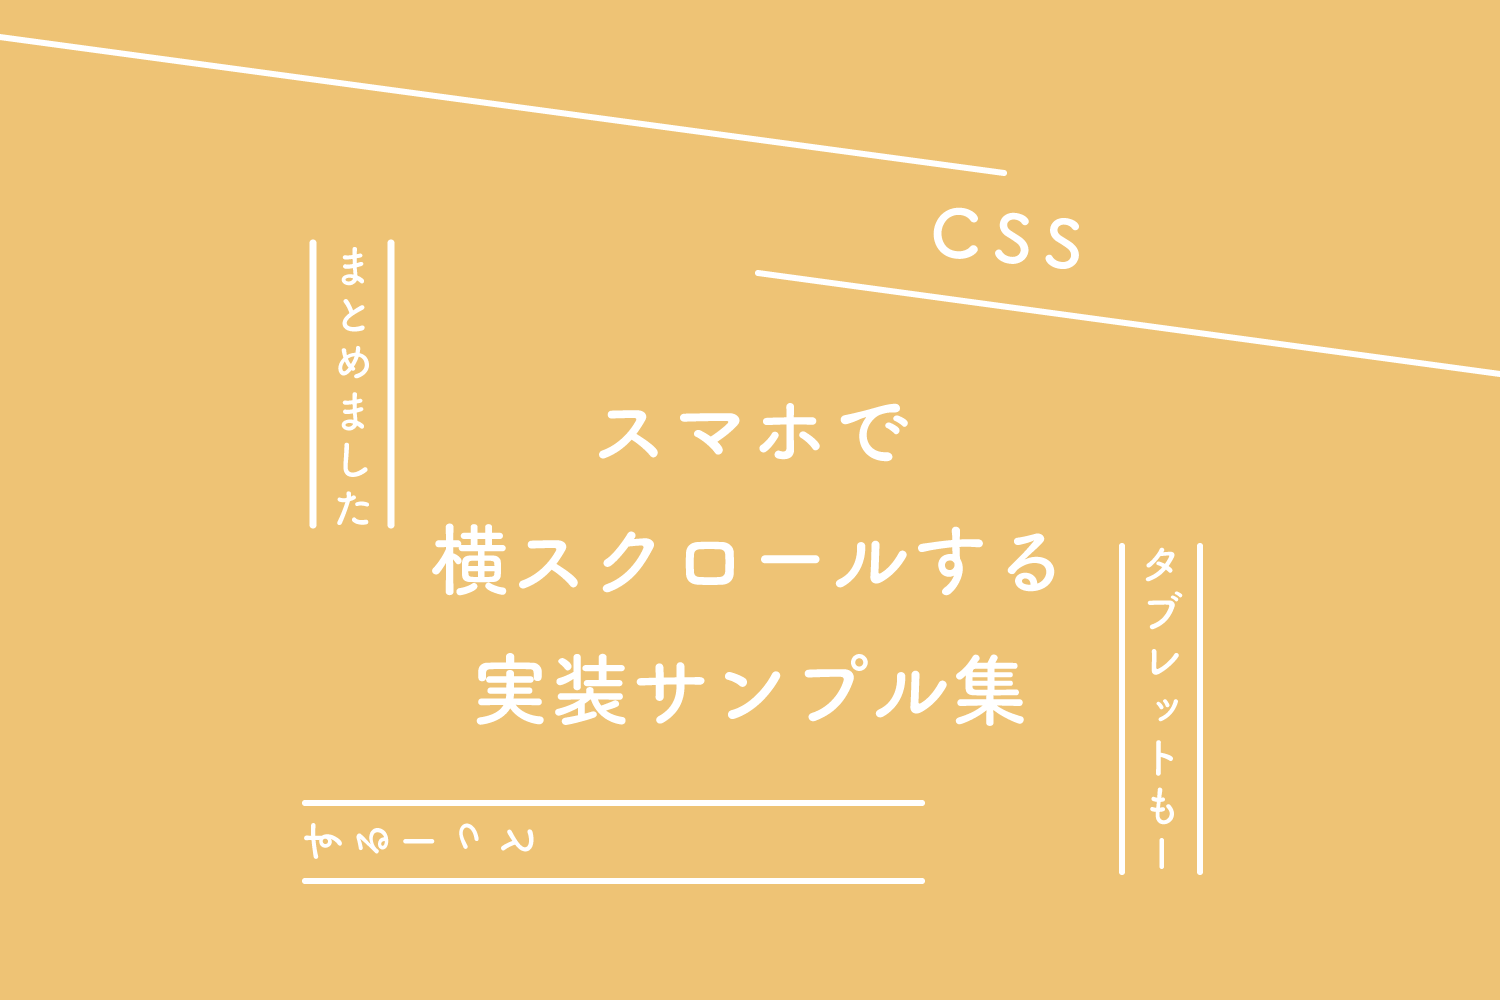 【CSS】スマホ、タブレットで横スクロールする実装サンプル集